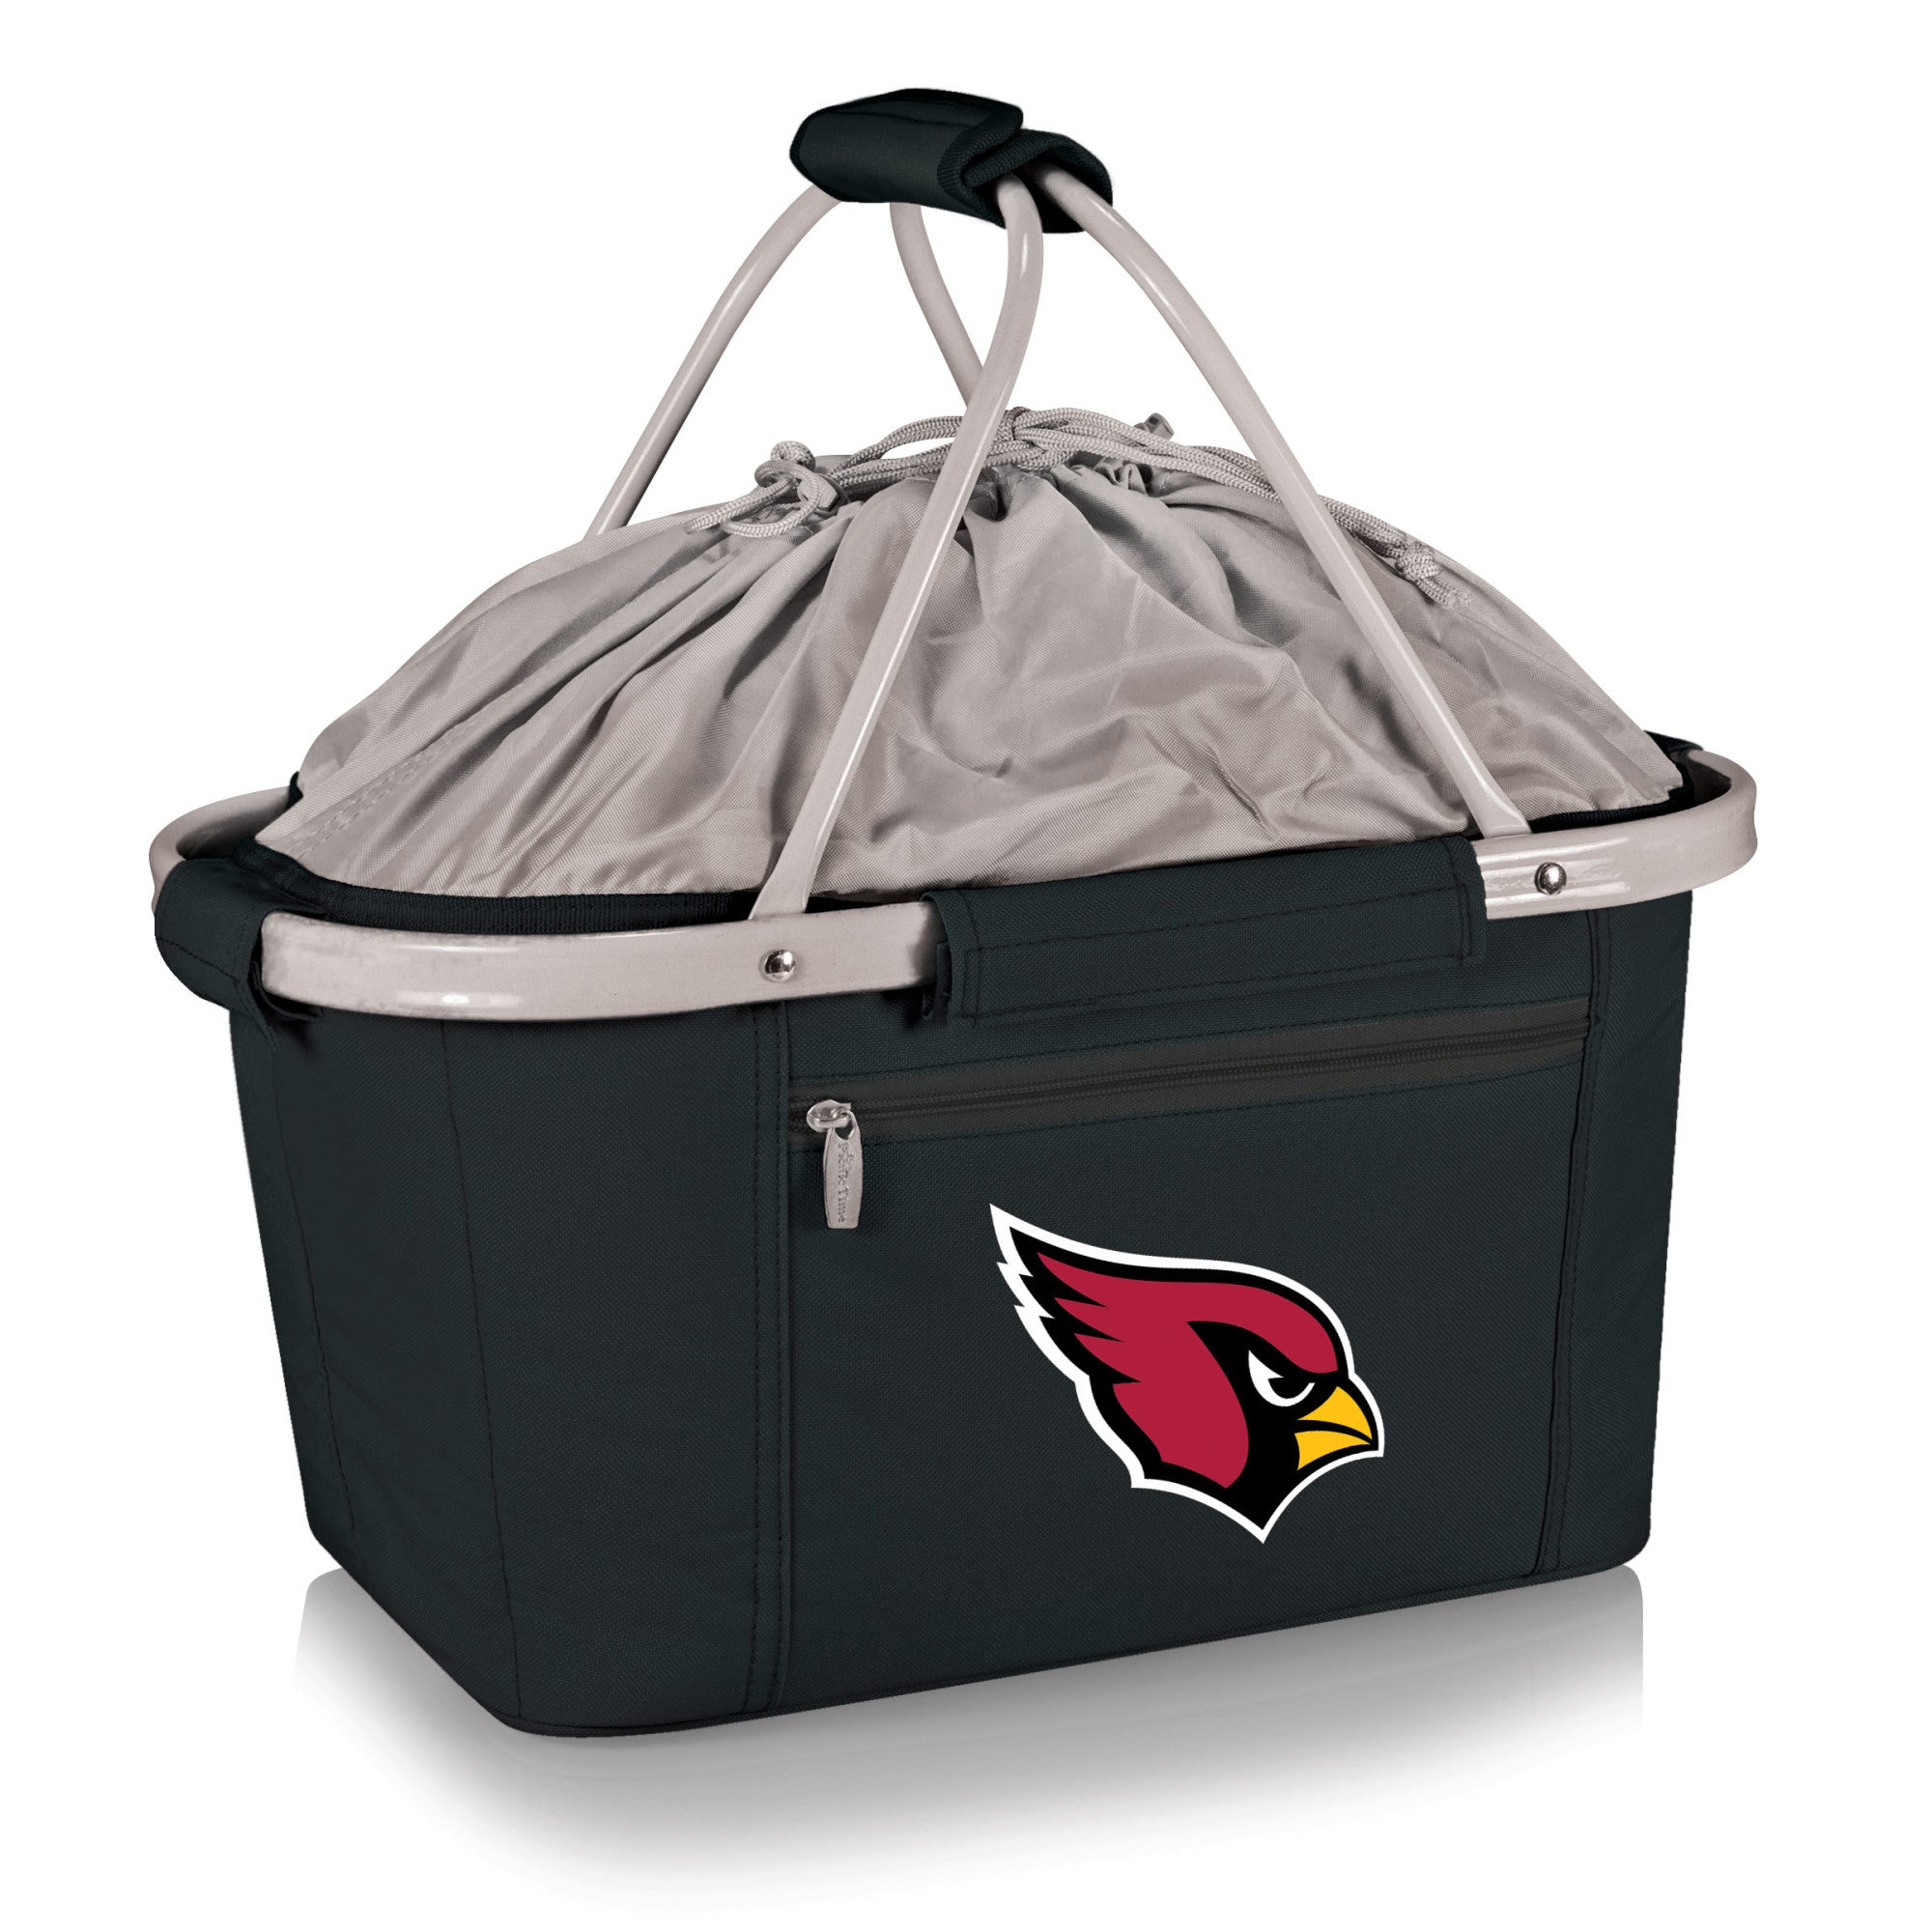 Picnic Time - Arizona cardinals - metro basket collapsible cooler tote, (black)